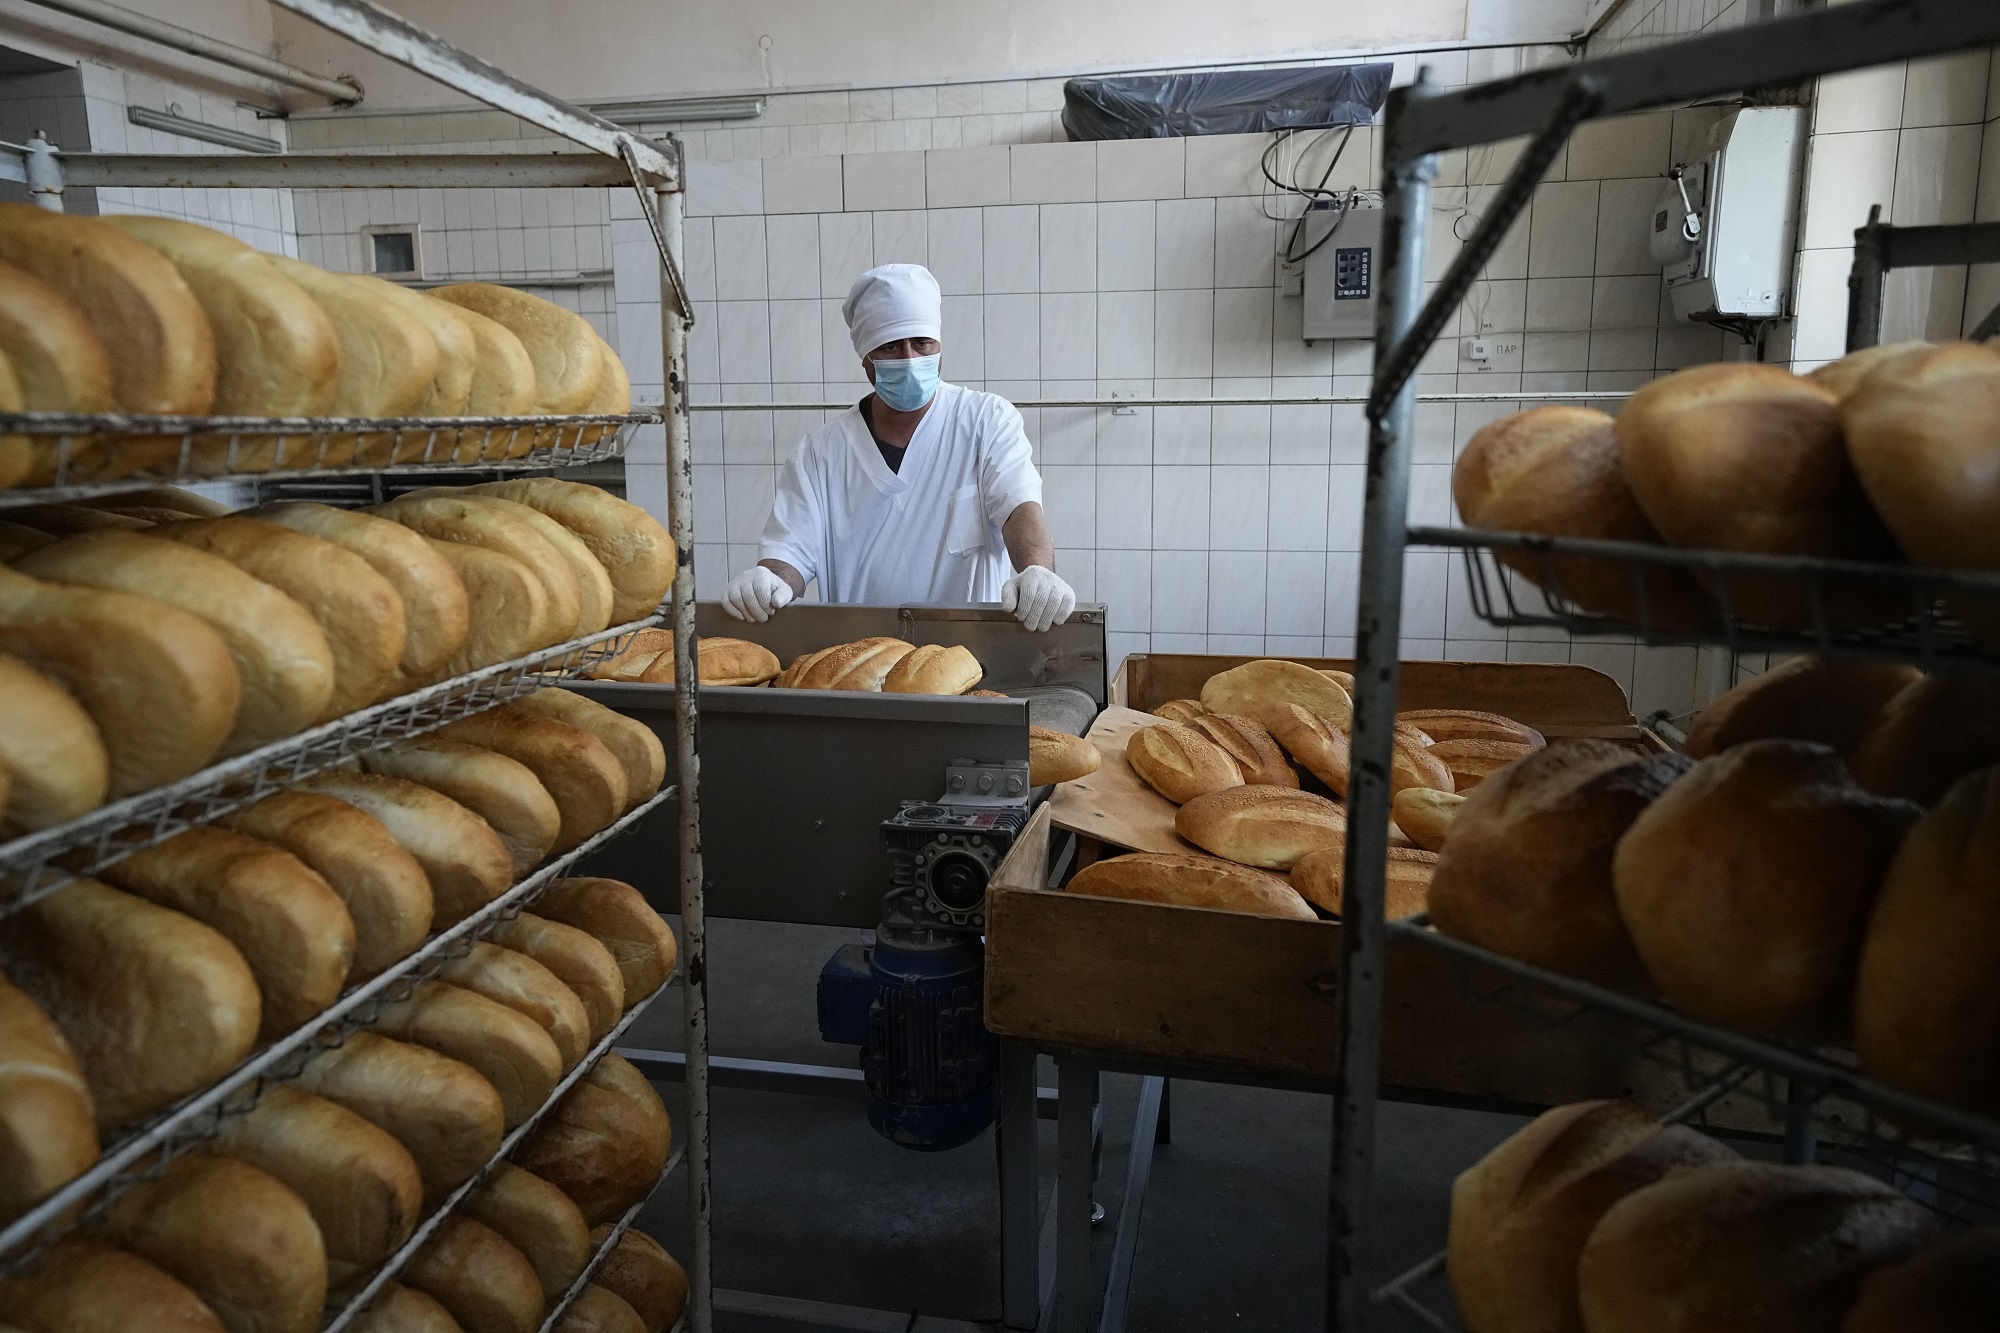 Κροατία: Αύξηση της τιμής του ψωμιού κατά 31% και των τροφίμων κατά 21% -Τα πρωτεία έχει η Ουγγαρία με 65%